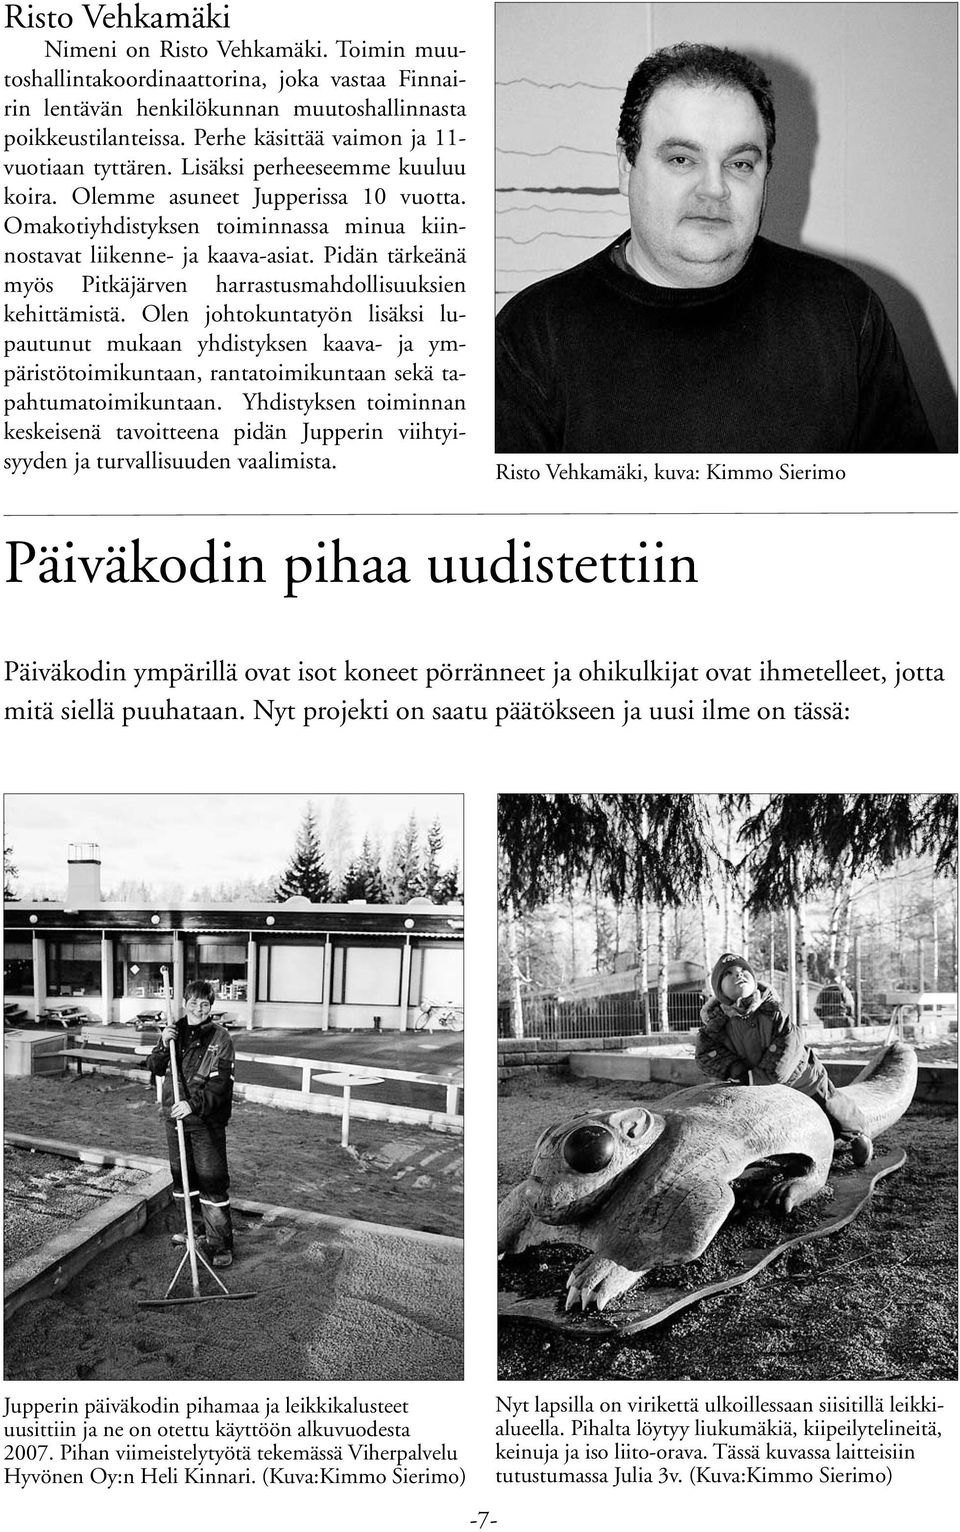 Pidän tärkeänä myös Pitkäjärven harrastusmahdollisuuksien kehittämistä.